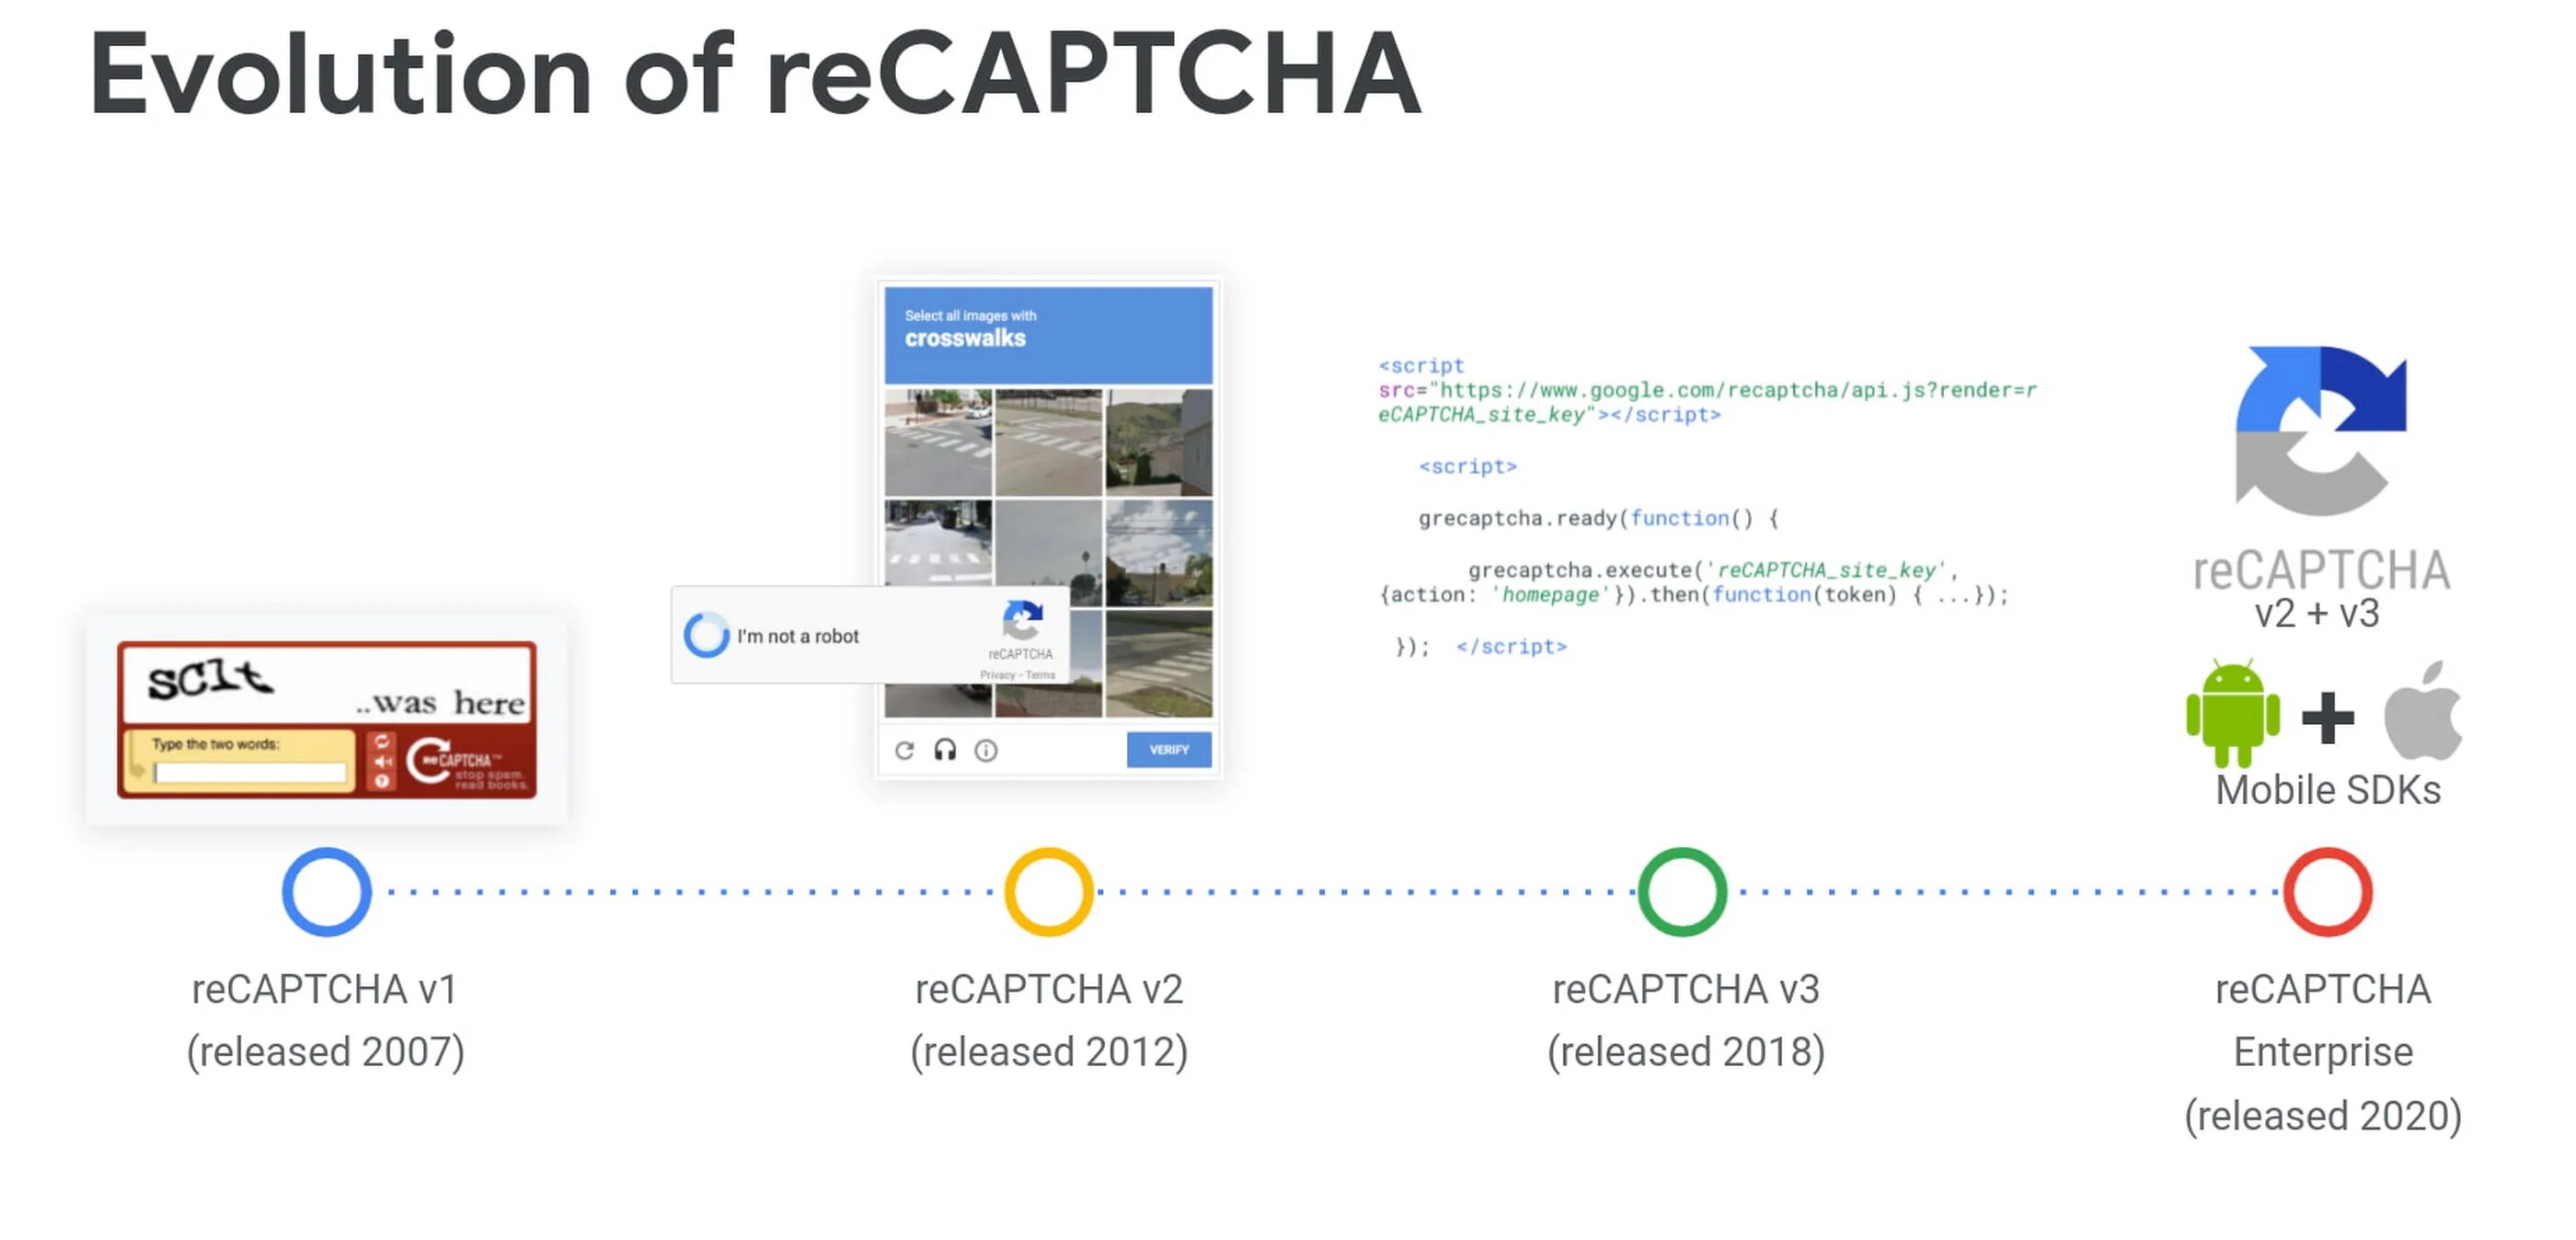 RECAPTCHA Enterprise. Капча от гугл. RECAPTCHA от Google.. Рекапча пример. Recaptcha что это